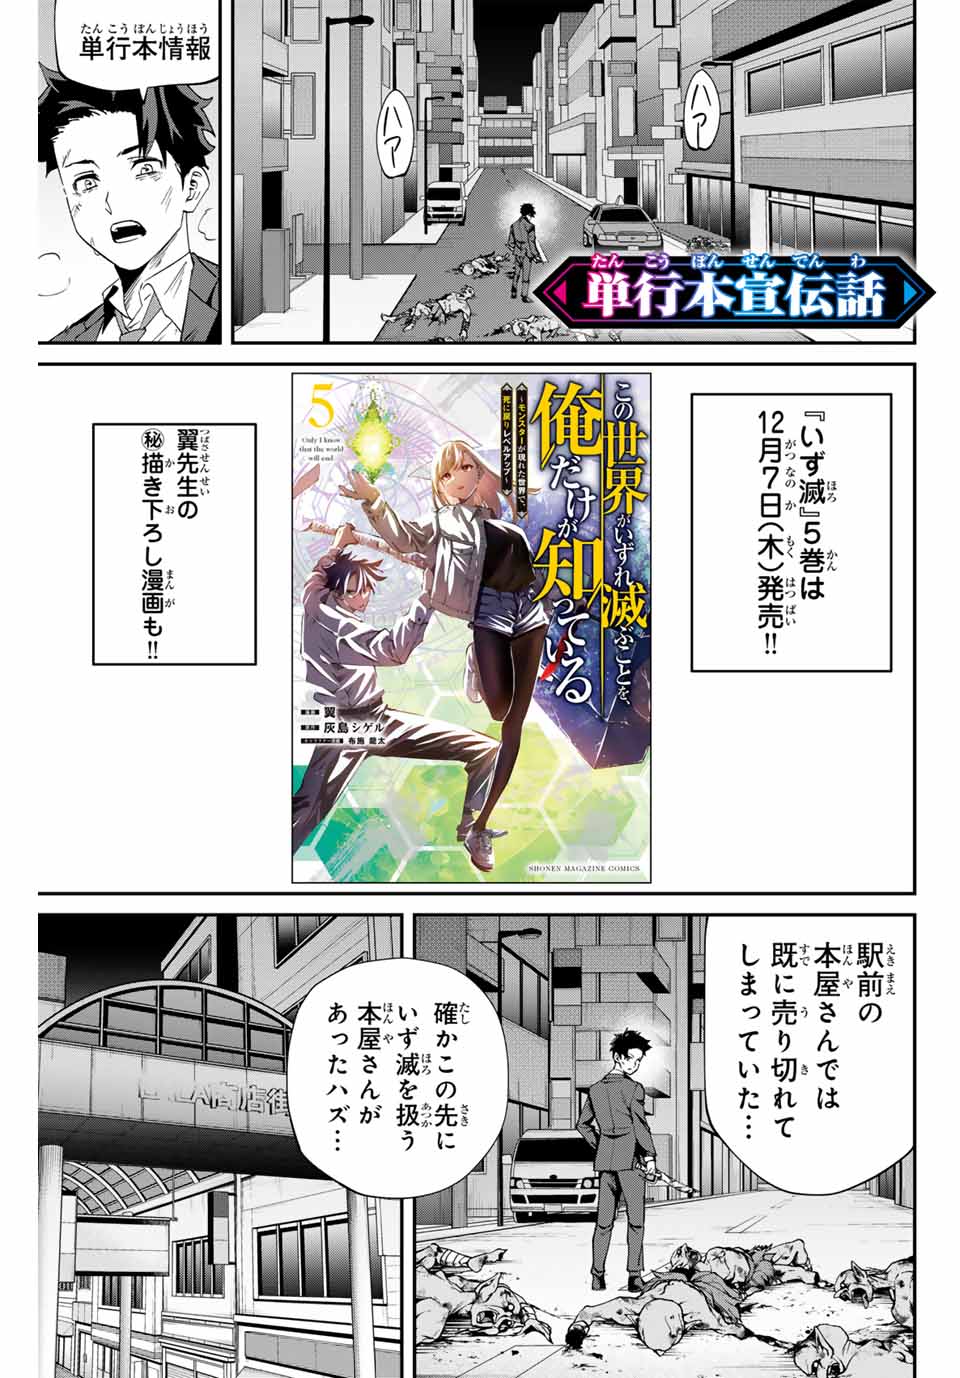 Kono Sekai ga Izure Horobu Koto wo, Ore dake ga Shitte Iru - Chapter 53.5 - Page 1